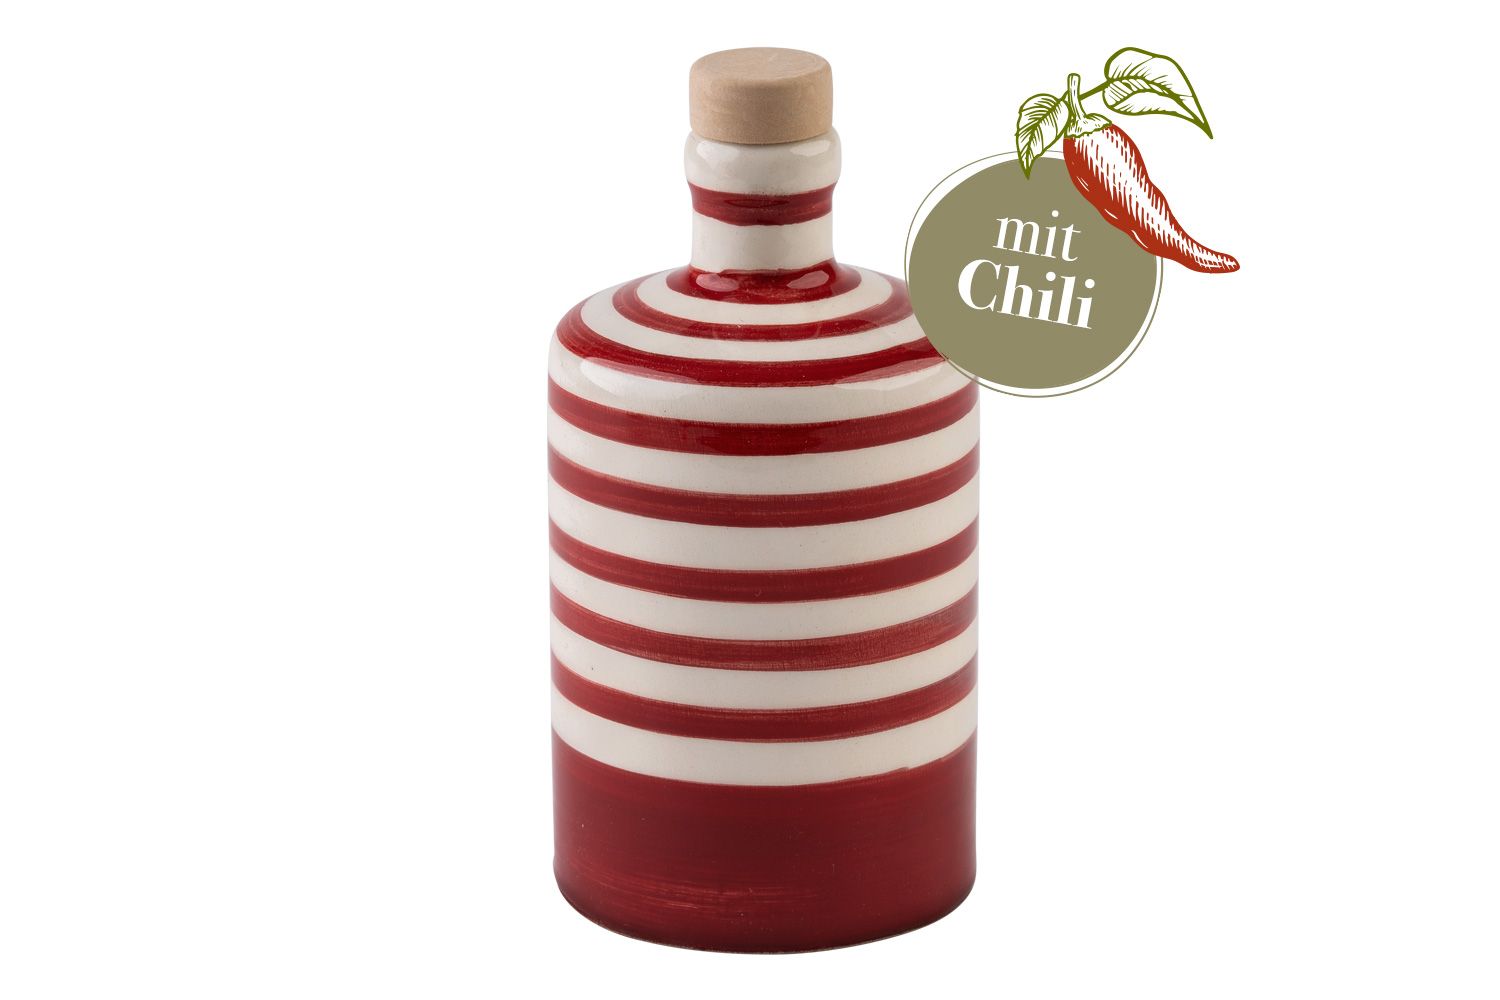 Eine runde, rot-gestreifte Olivenölflasche